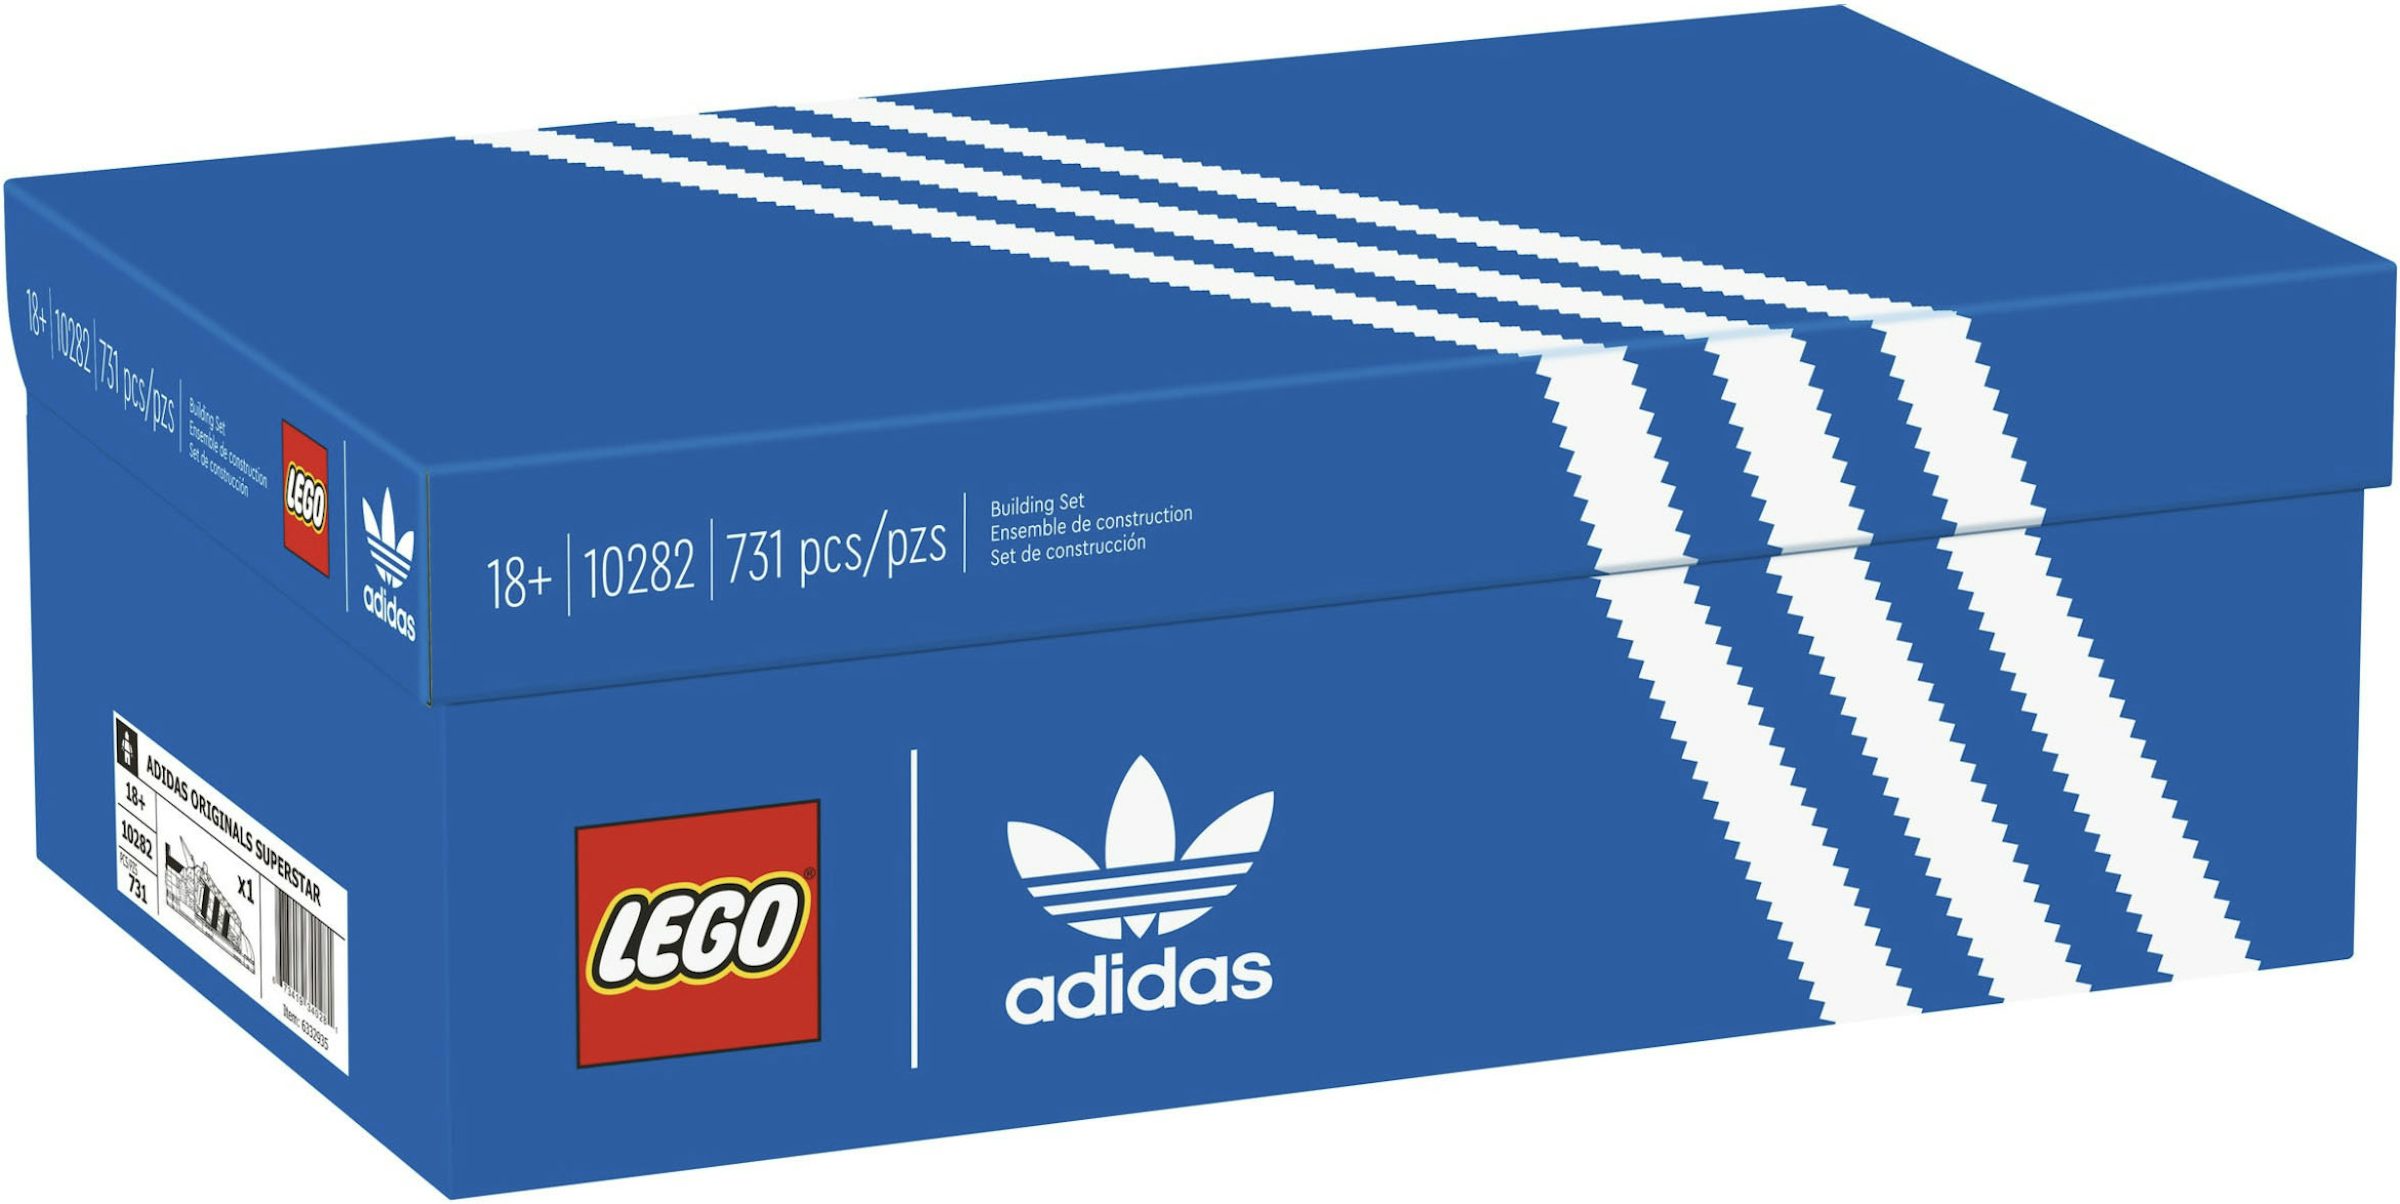 G nederdel billedtekst LEGO adidas Original Superstar Set 10282 - SS21 - US